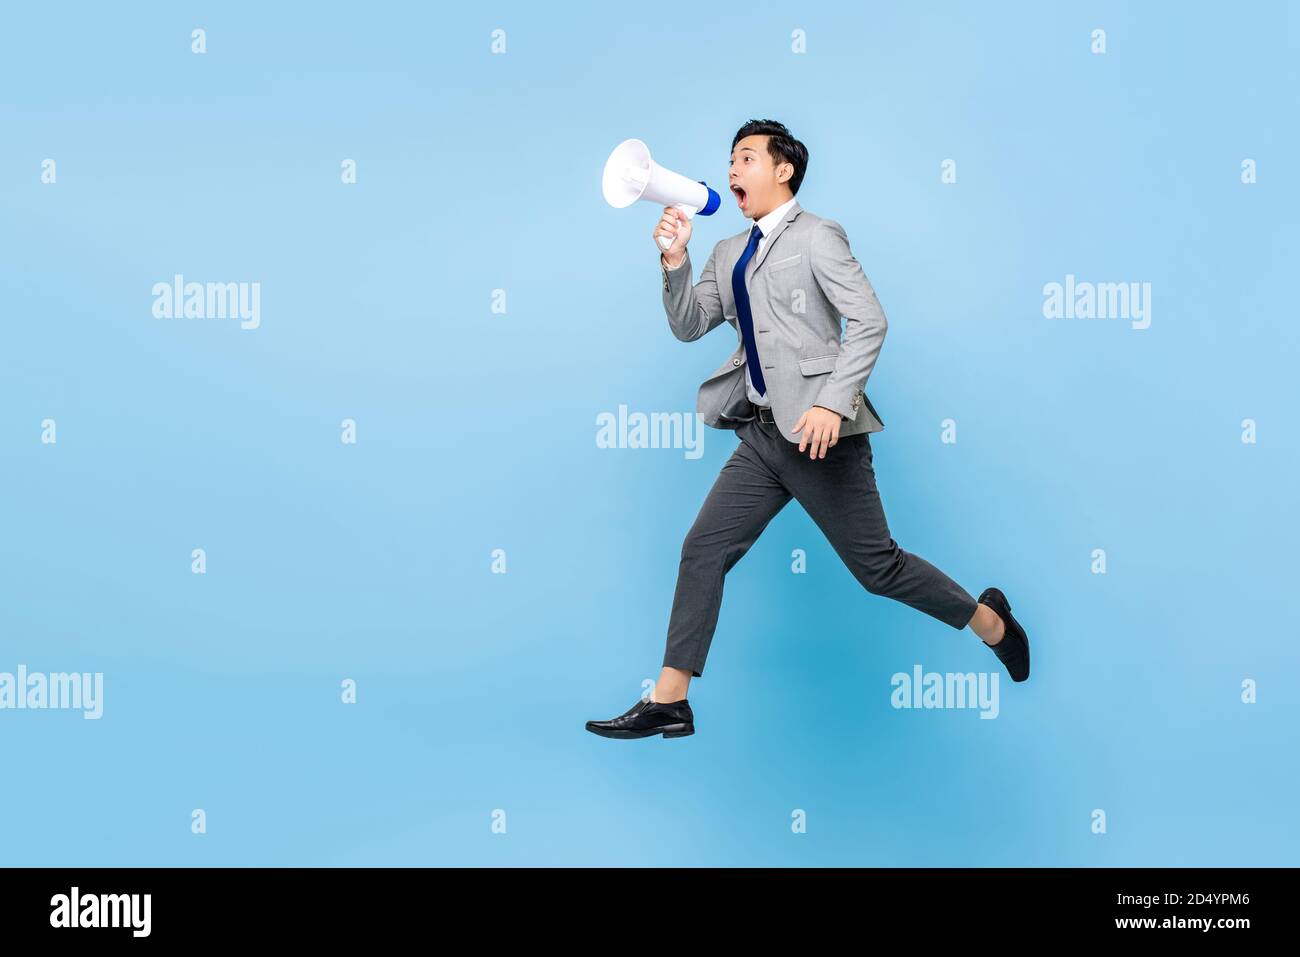 Surpris le jeune homme d'affaires asiatique sautant et criant sur le mégaphone isolé sur fond bleu clair avec espace de copie Banque D'Images